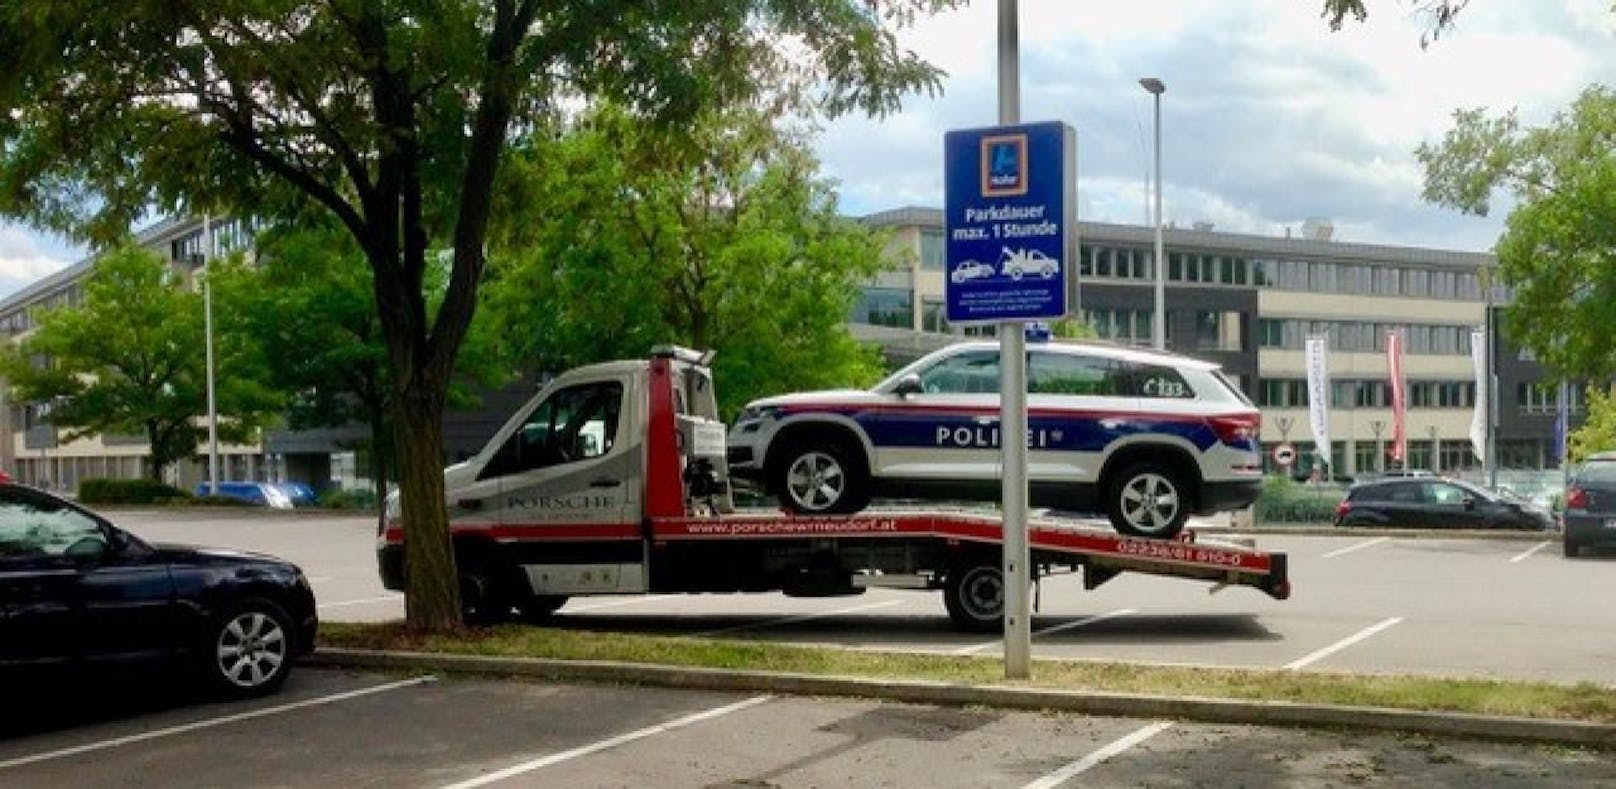 Abschlepp-Auto nimmt Polizeiwagen auf die Schaufel, davor warnt ein Schild vor Falschparken